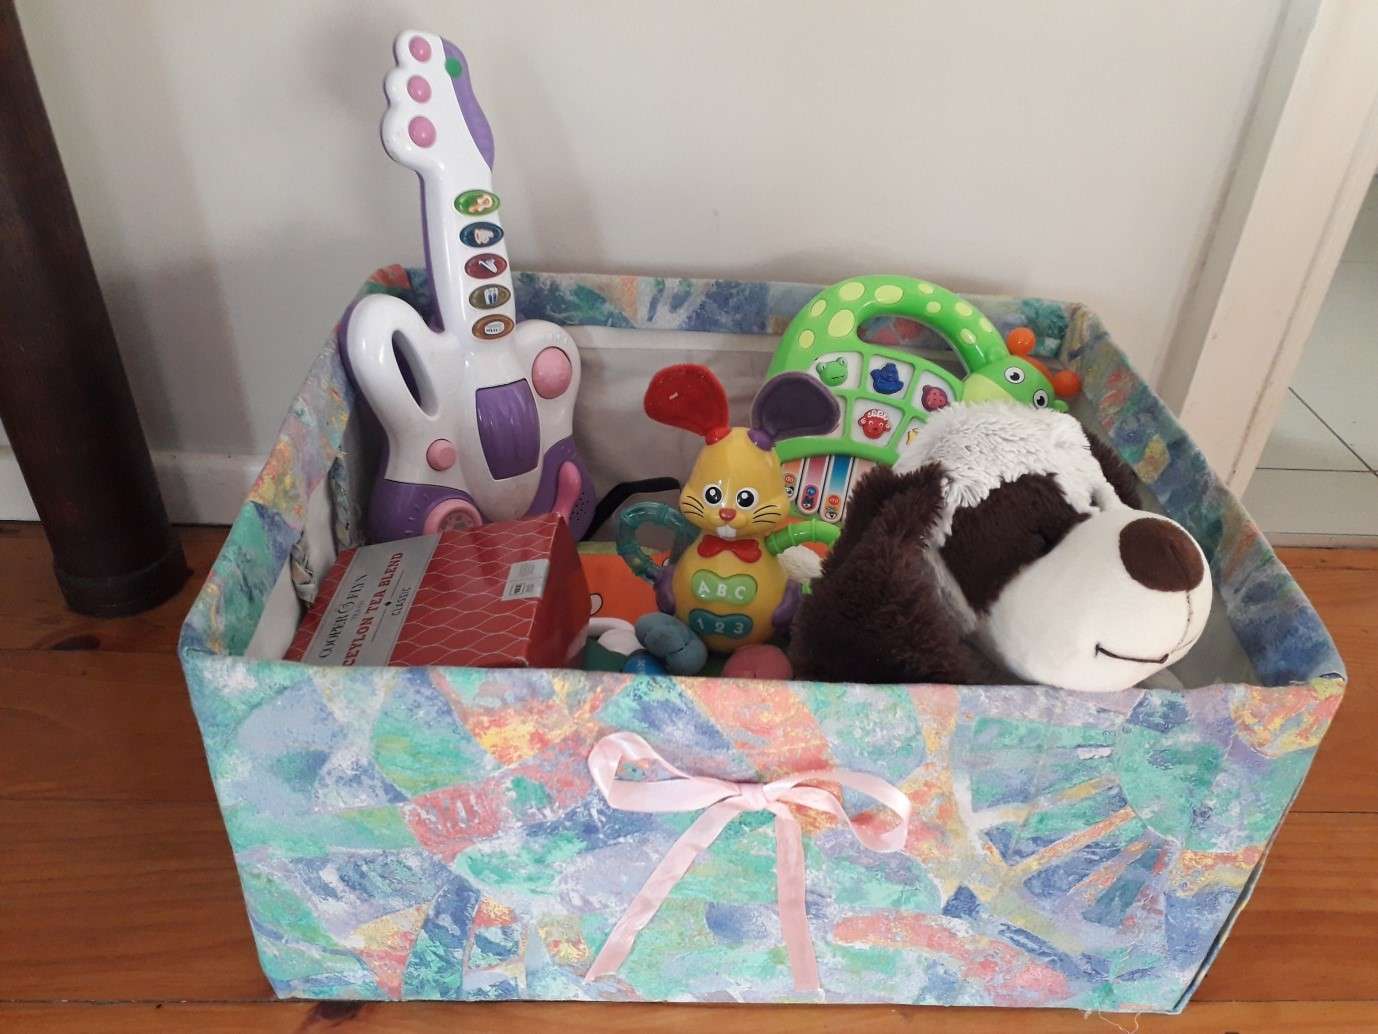 Box full of toys